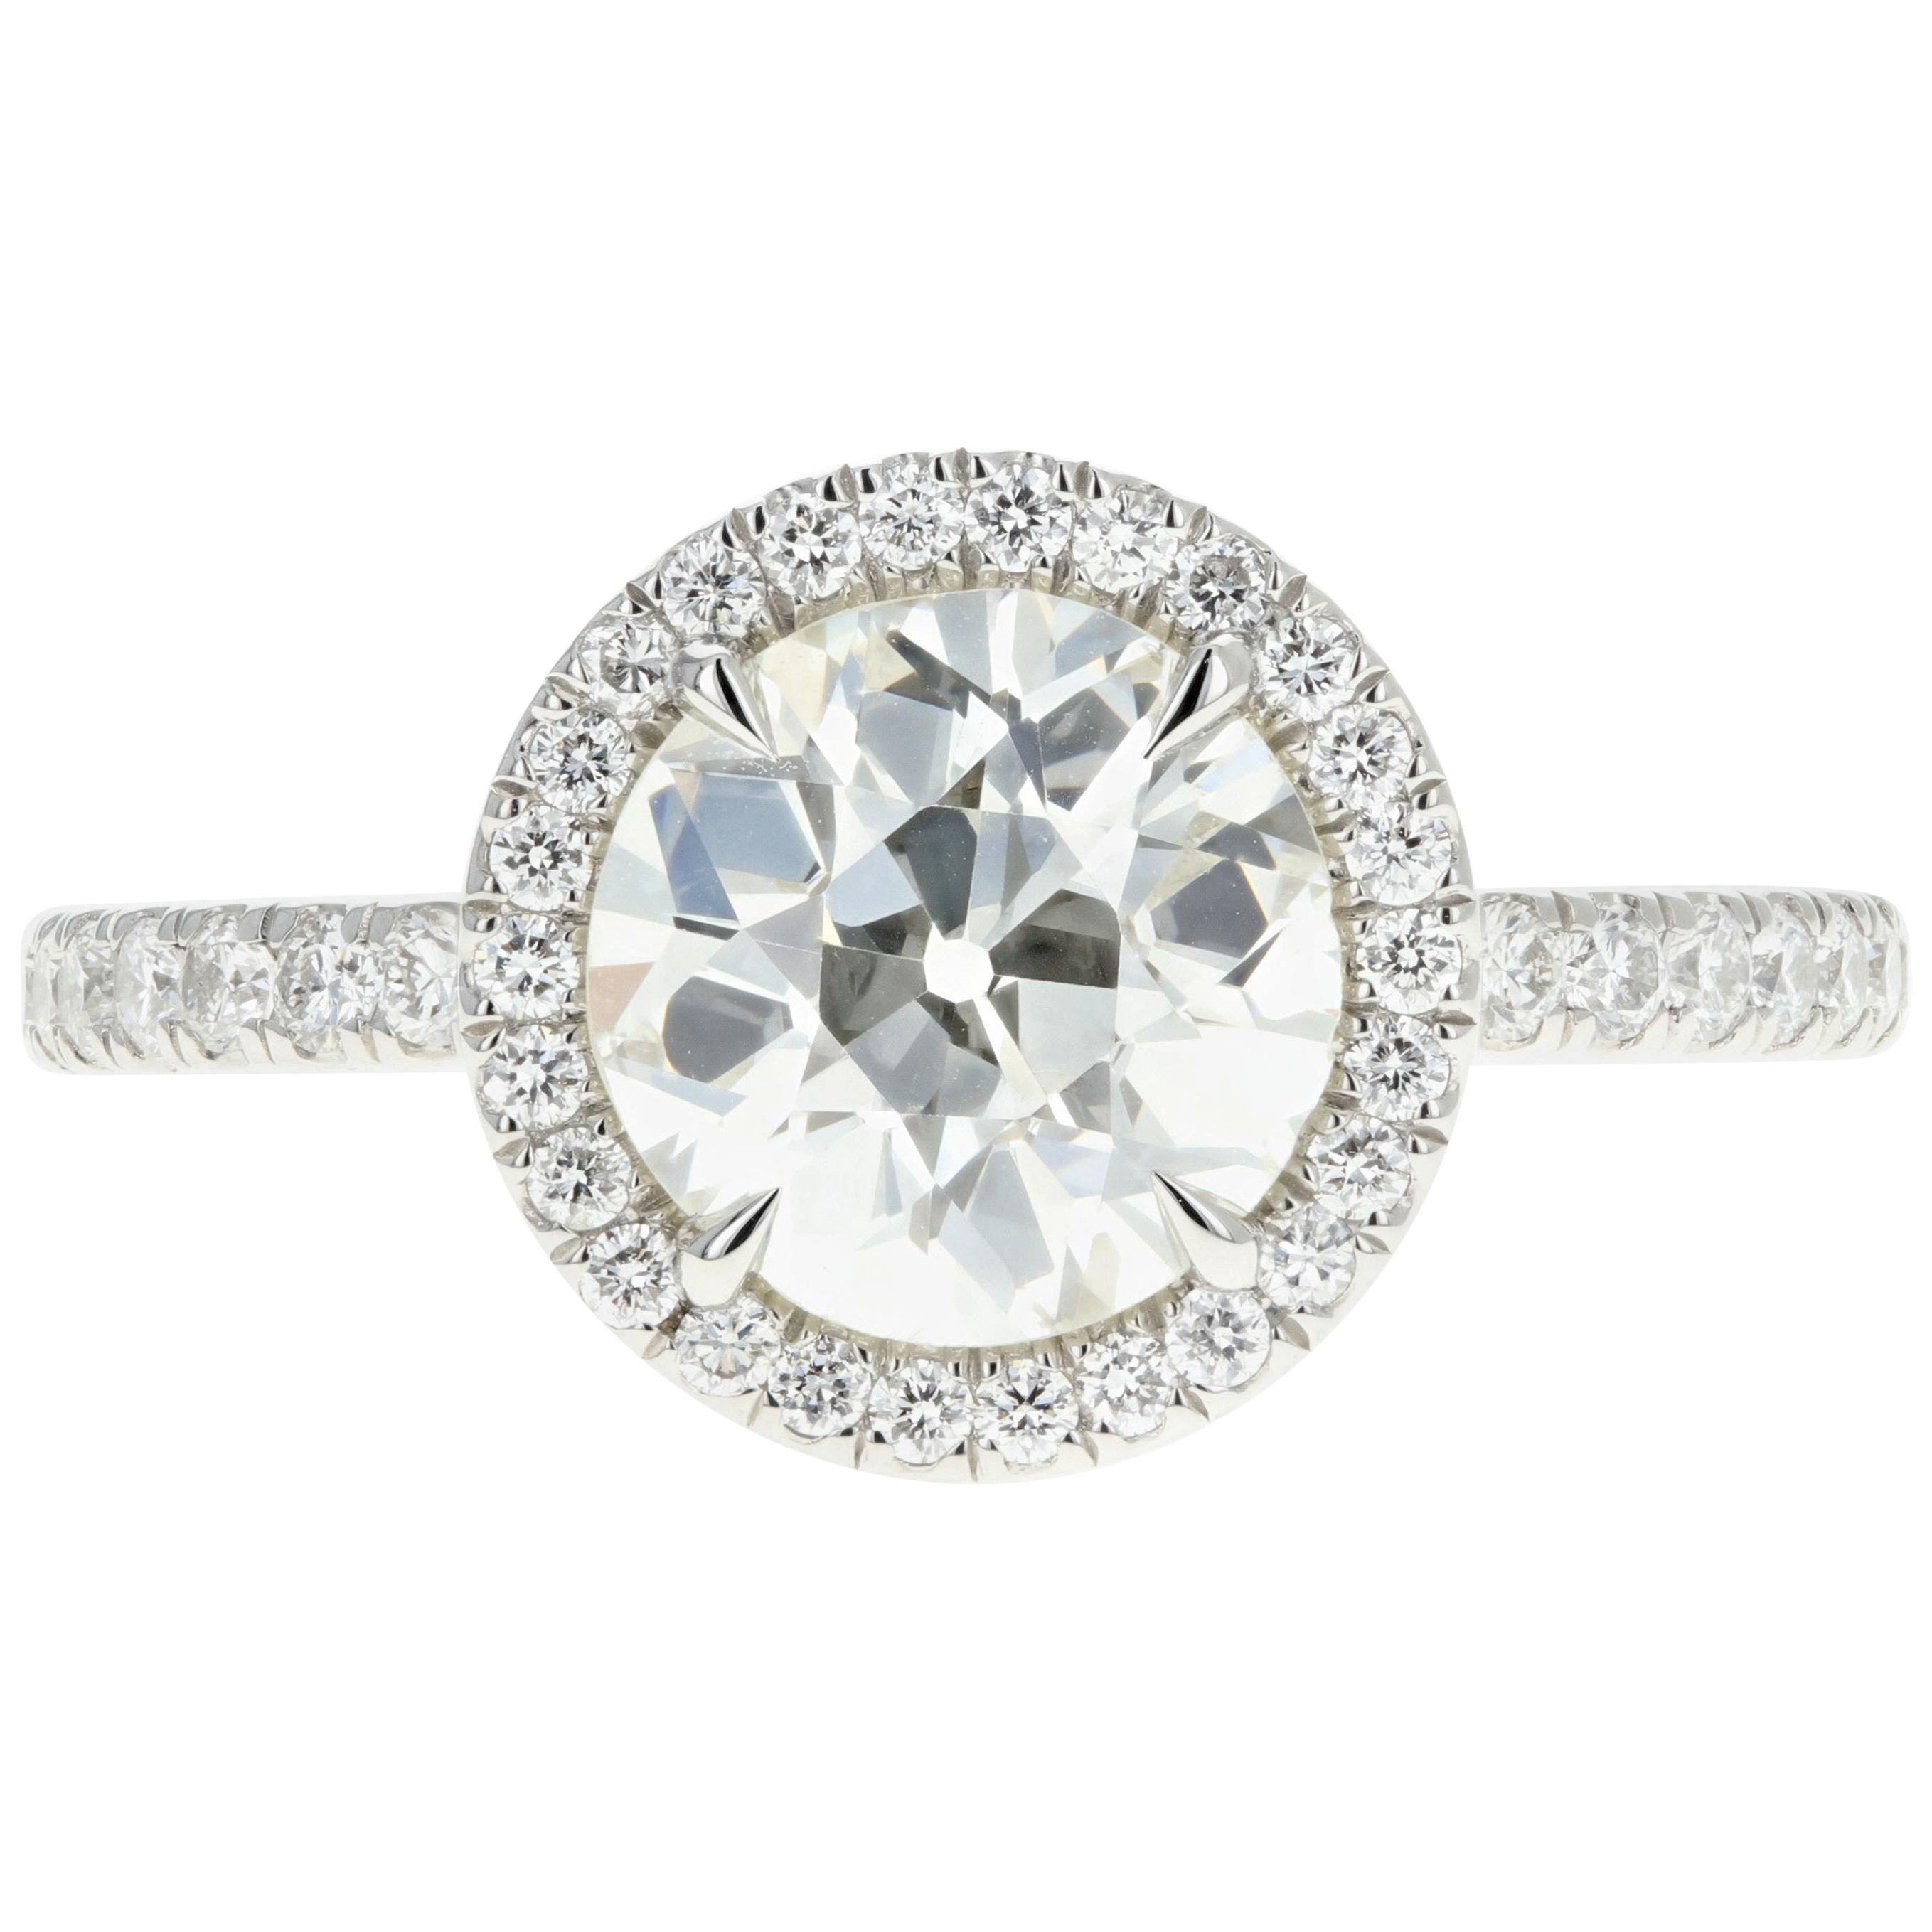 Platinum 1.85 Carat Old European Cut Diamond Engagement Ring